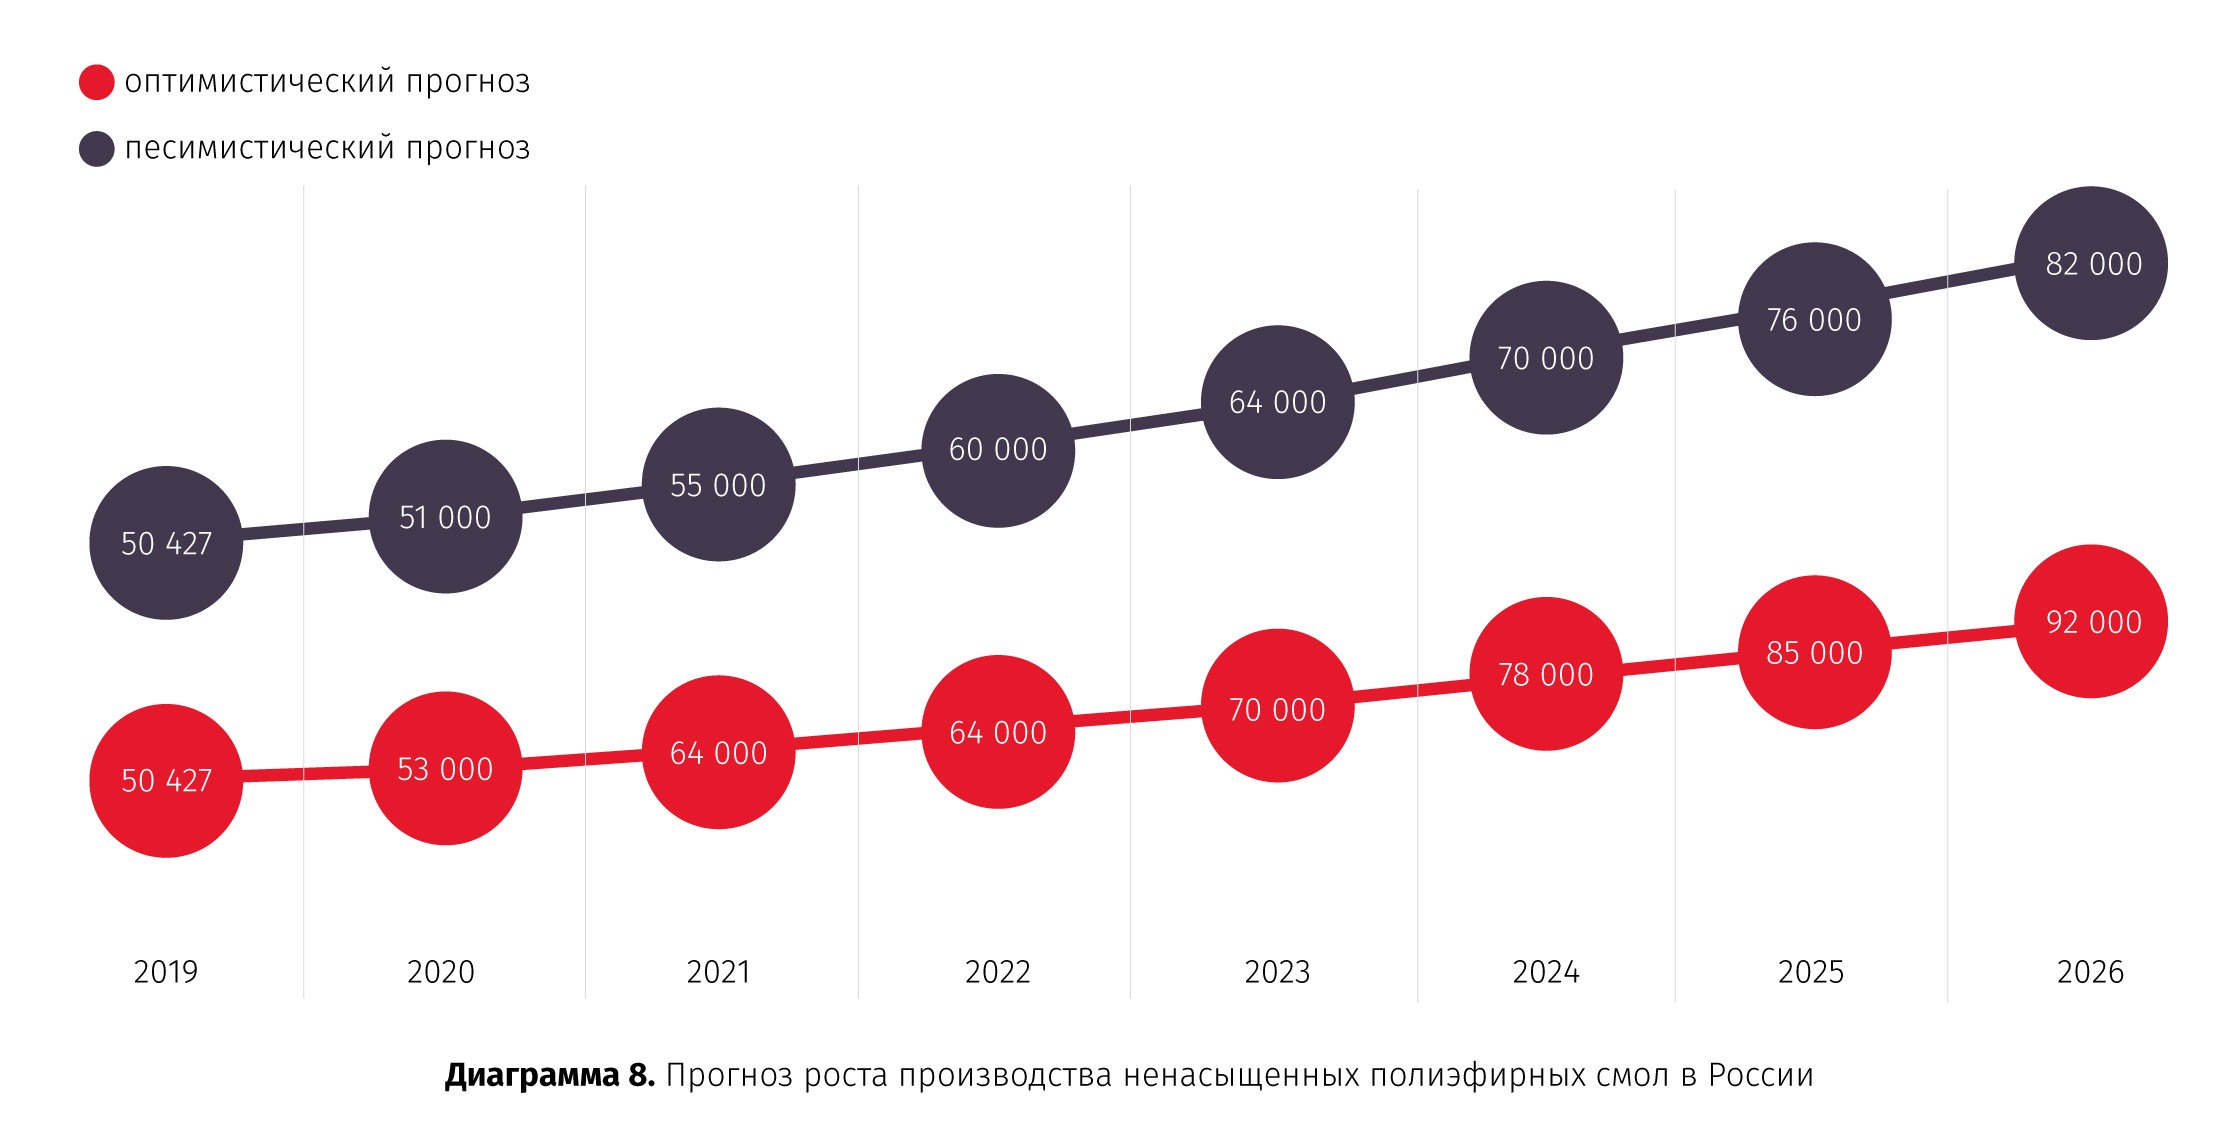 Прогноз роста производства ненасыщенных полиэфирных смол в России